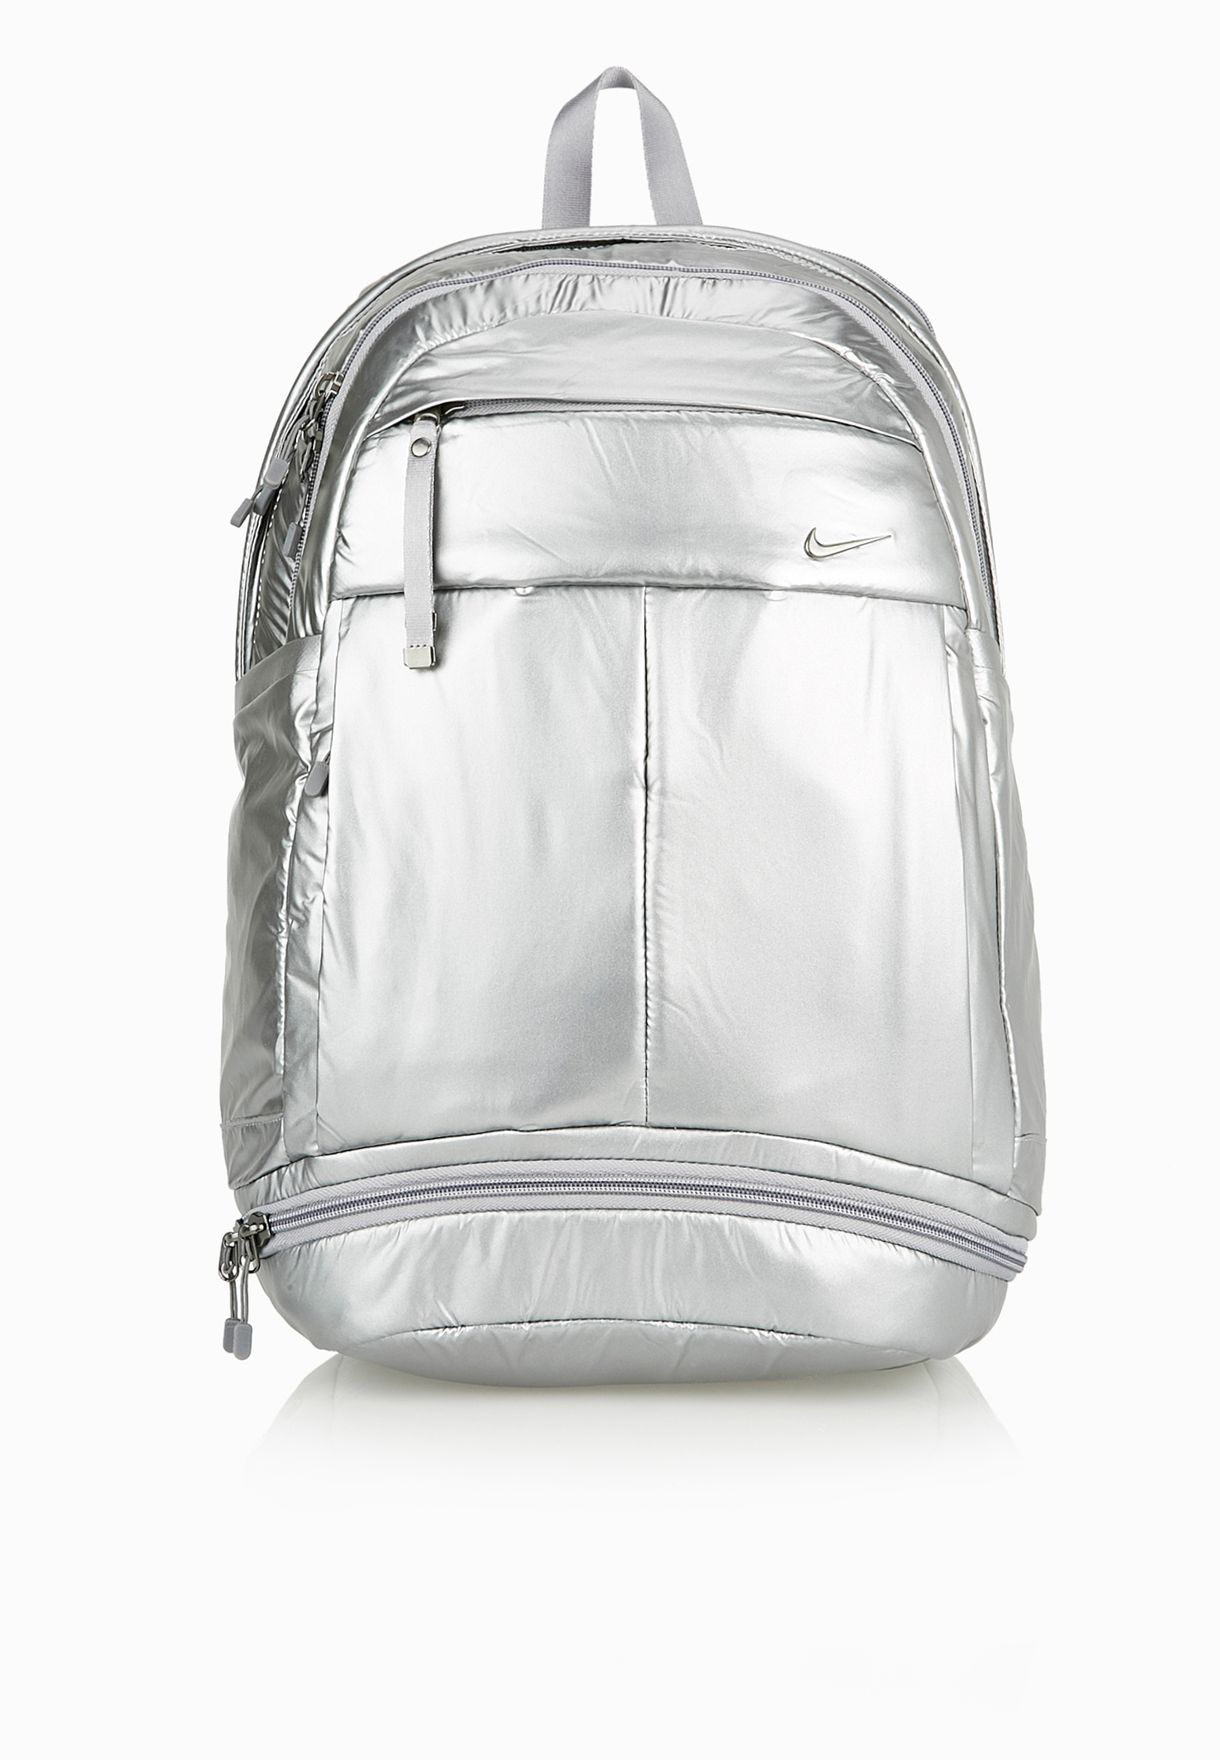 silver nike backpack